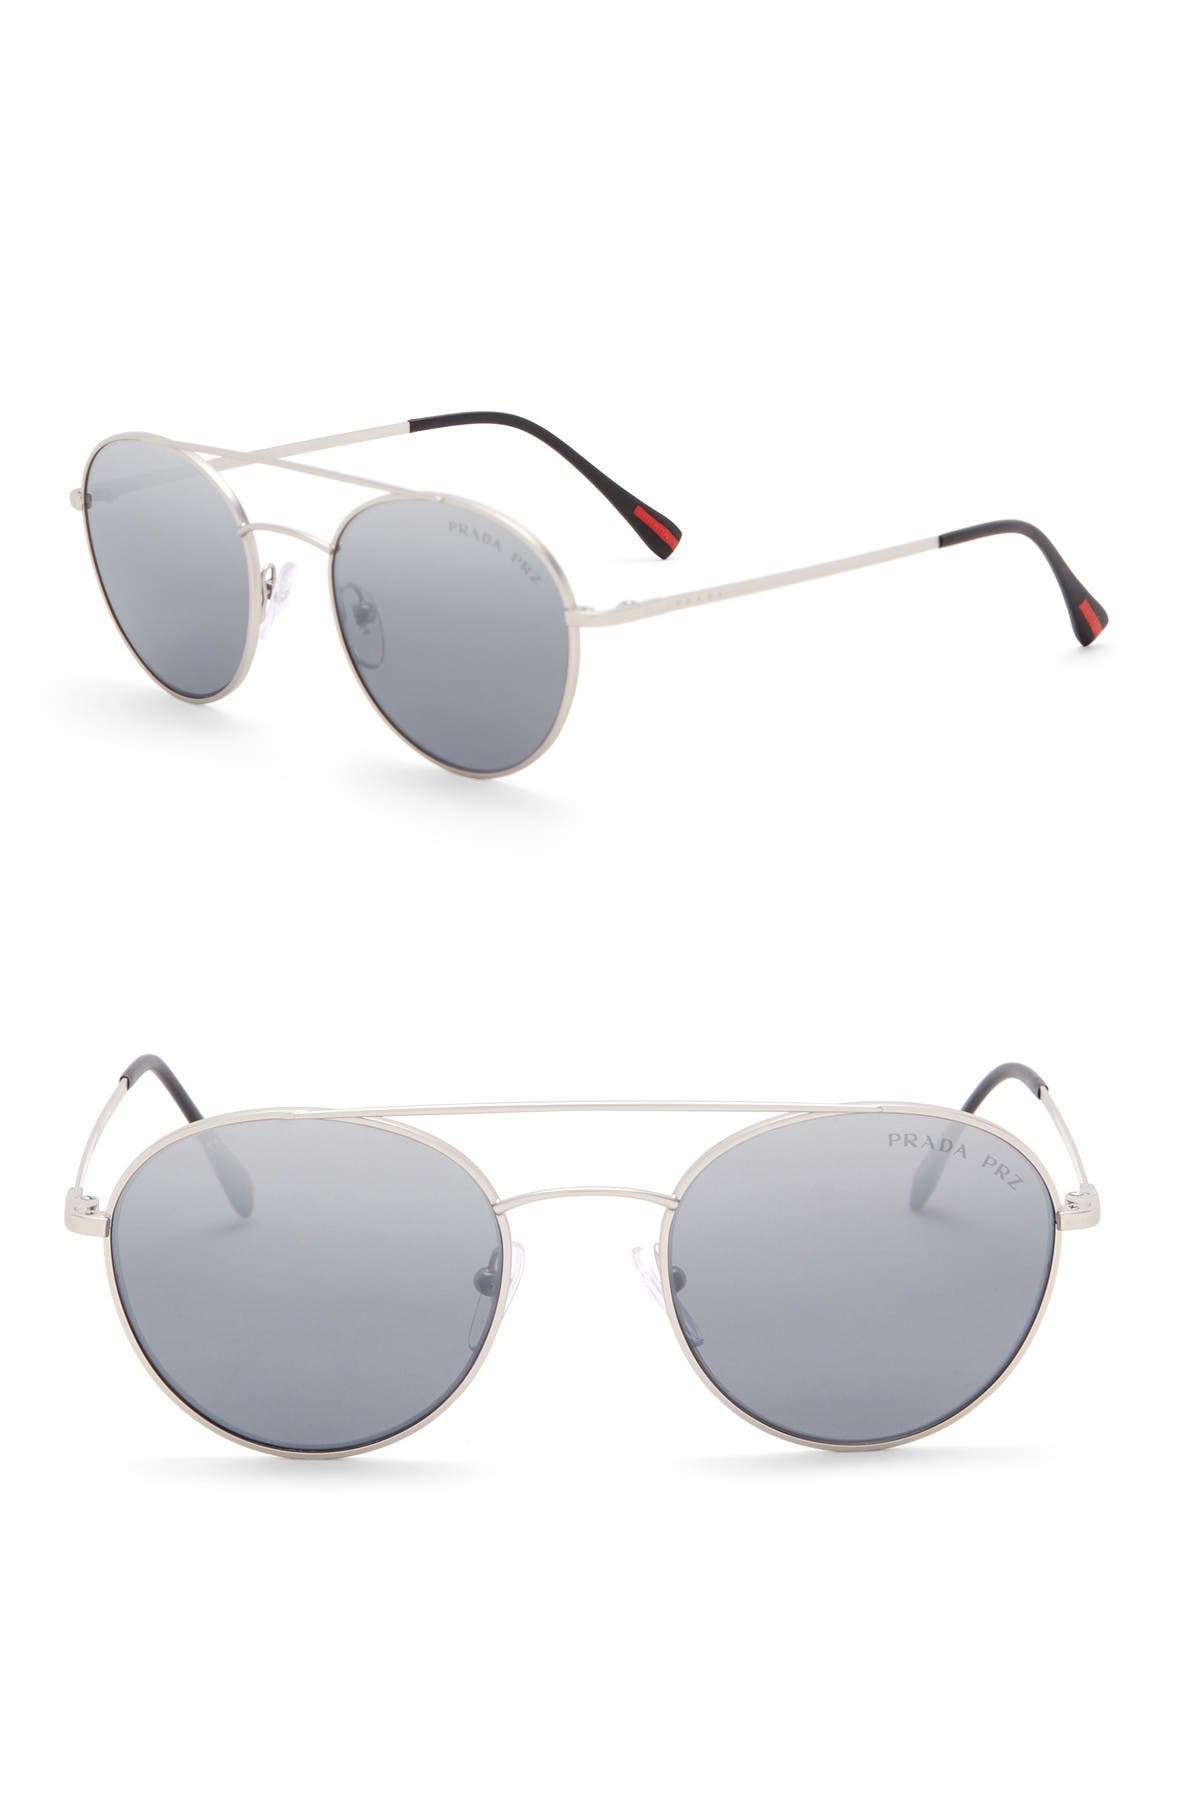 prada women's round 54mm sunglasses